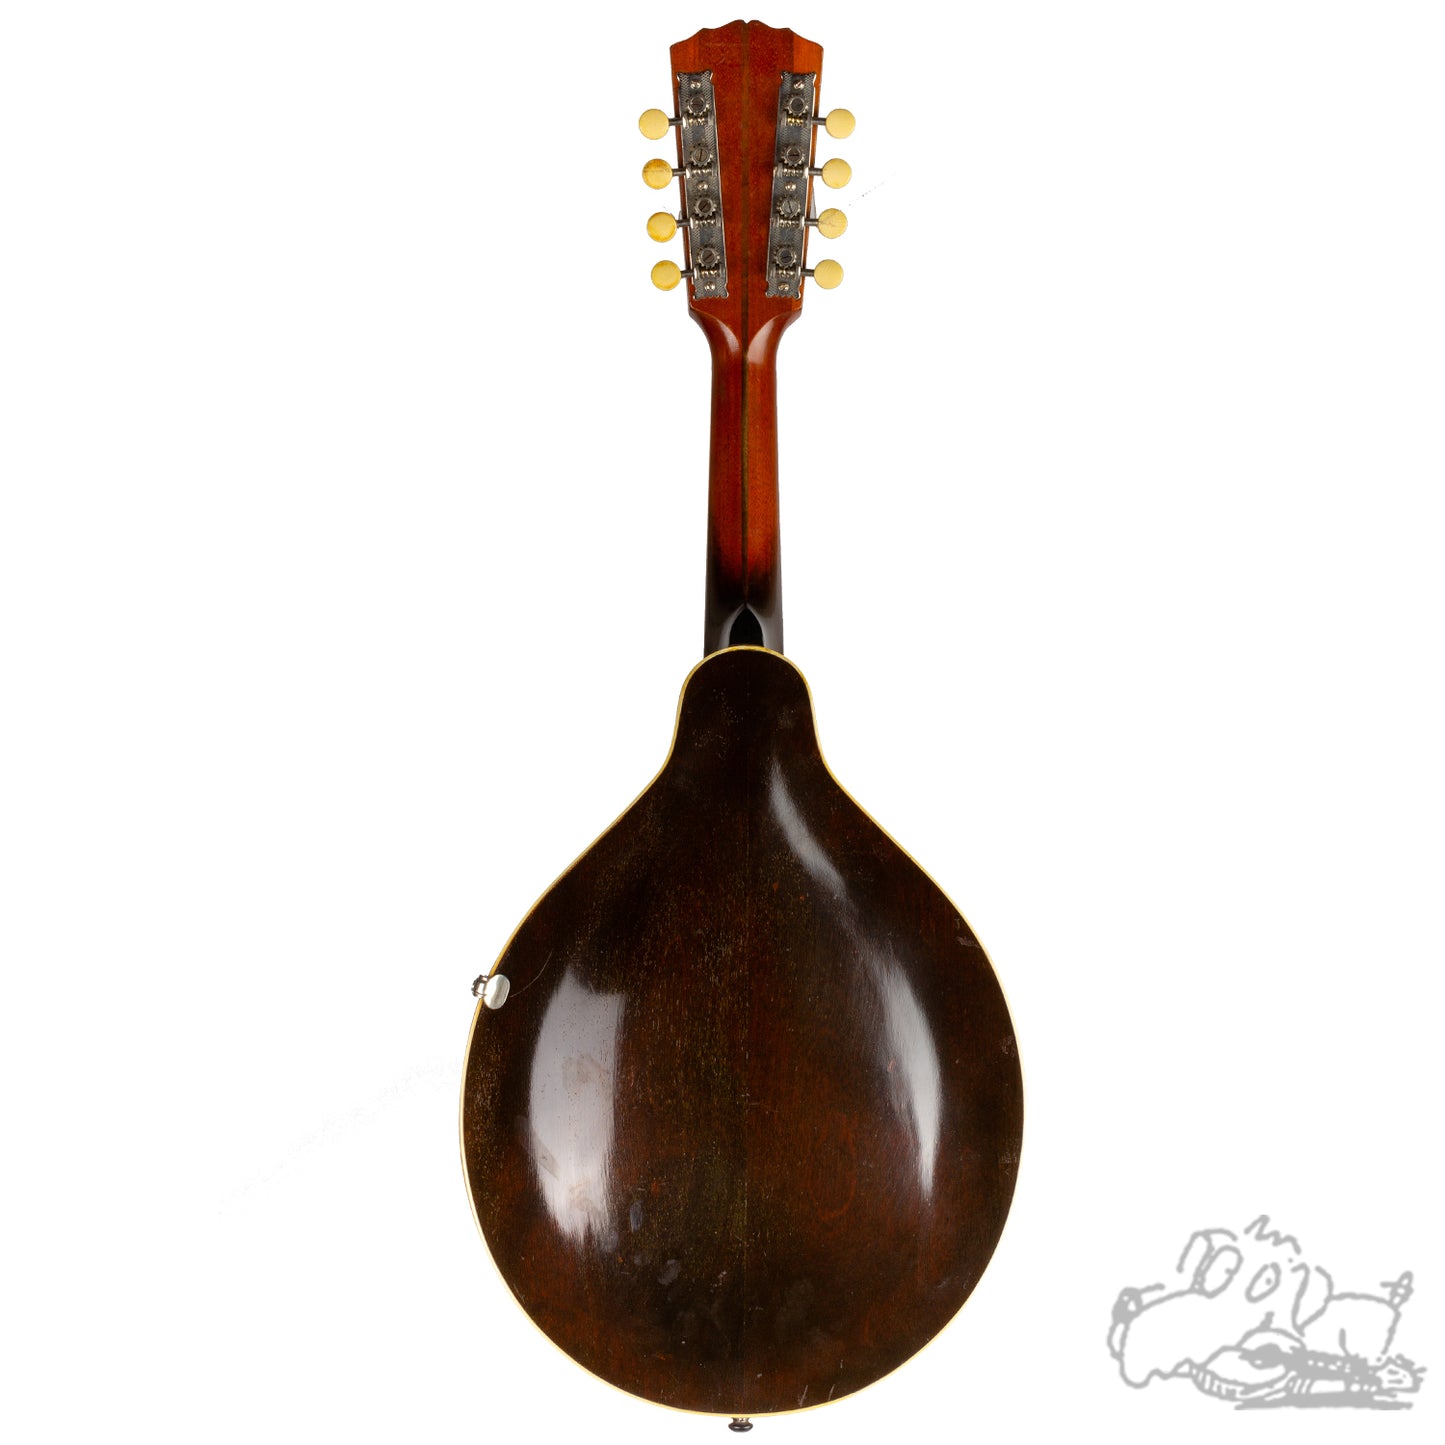 1921 Gibson A2 Mandolin